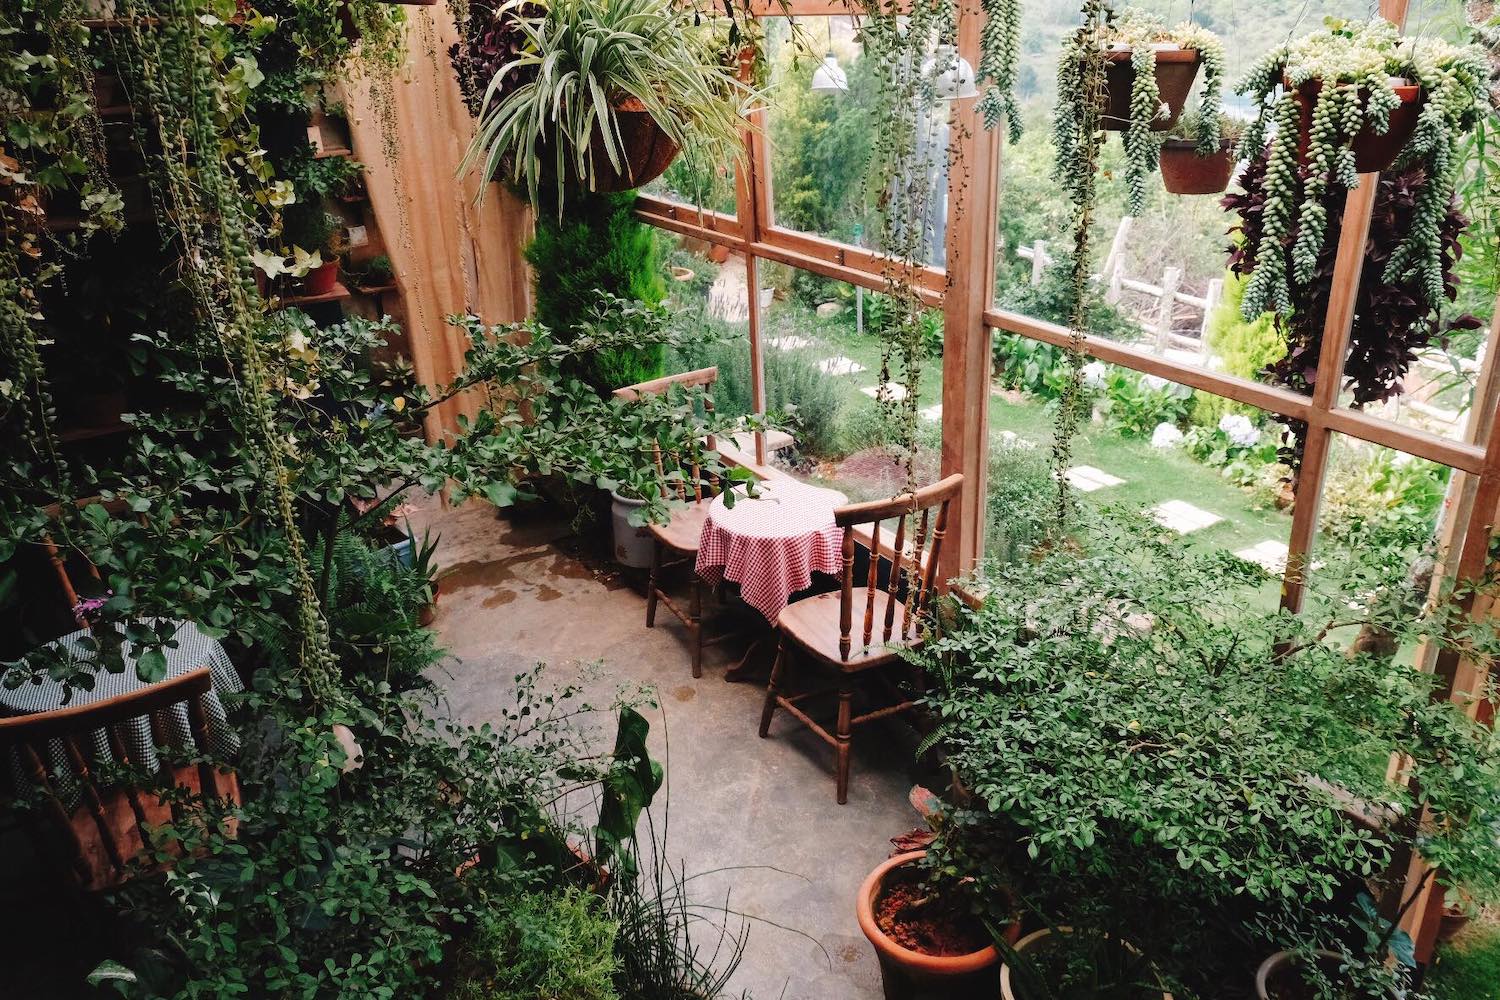 Tiệm cà phê Khu vườn mùa hè - Úm ba la ra quán cà phê mộng mơ đi một lần post hình một tuần ở Đà Lạt 17